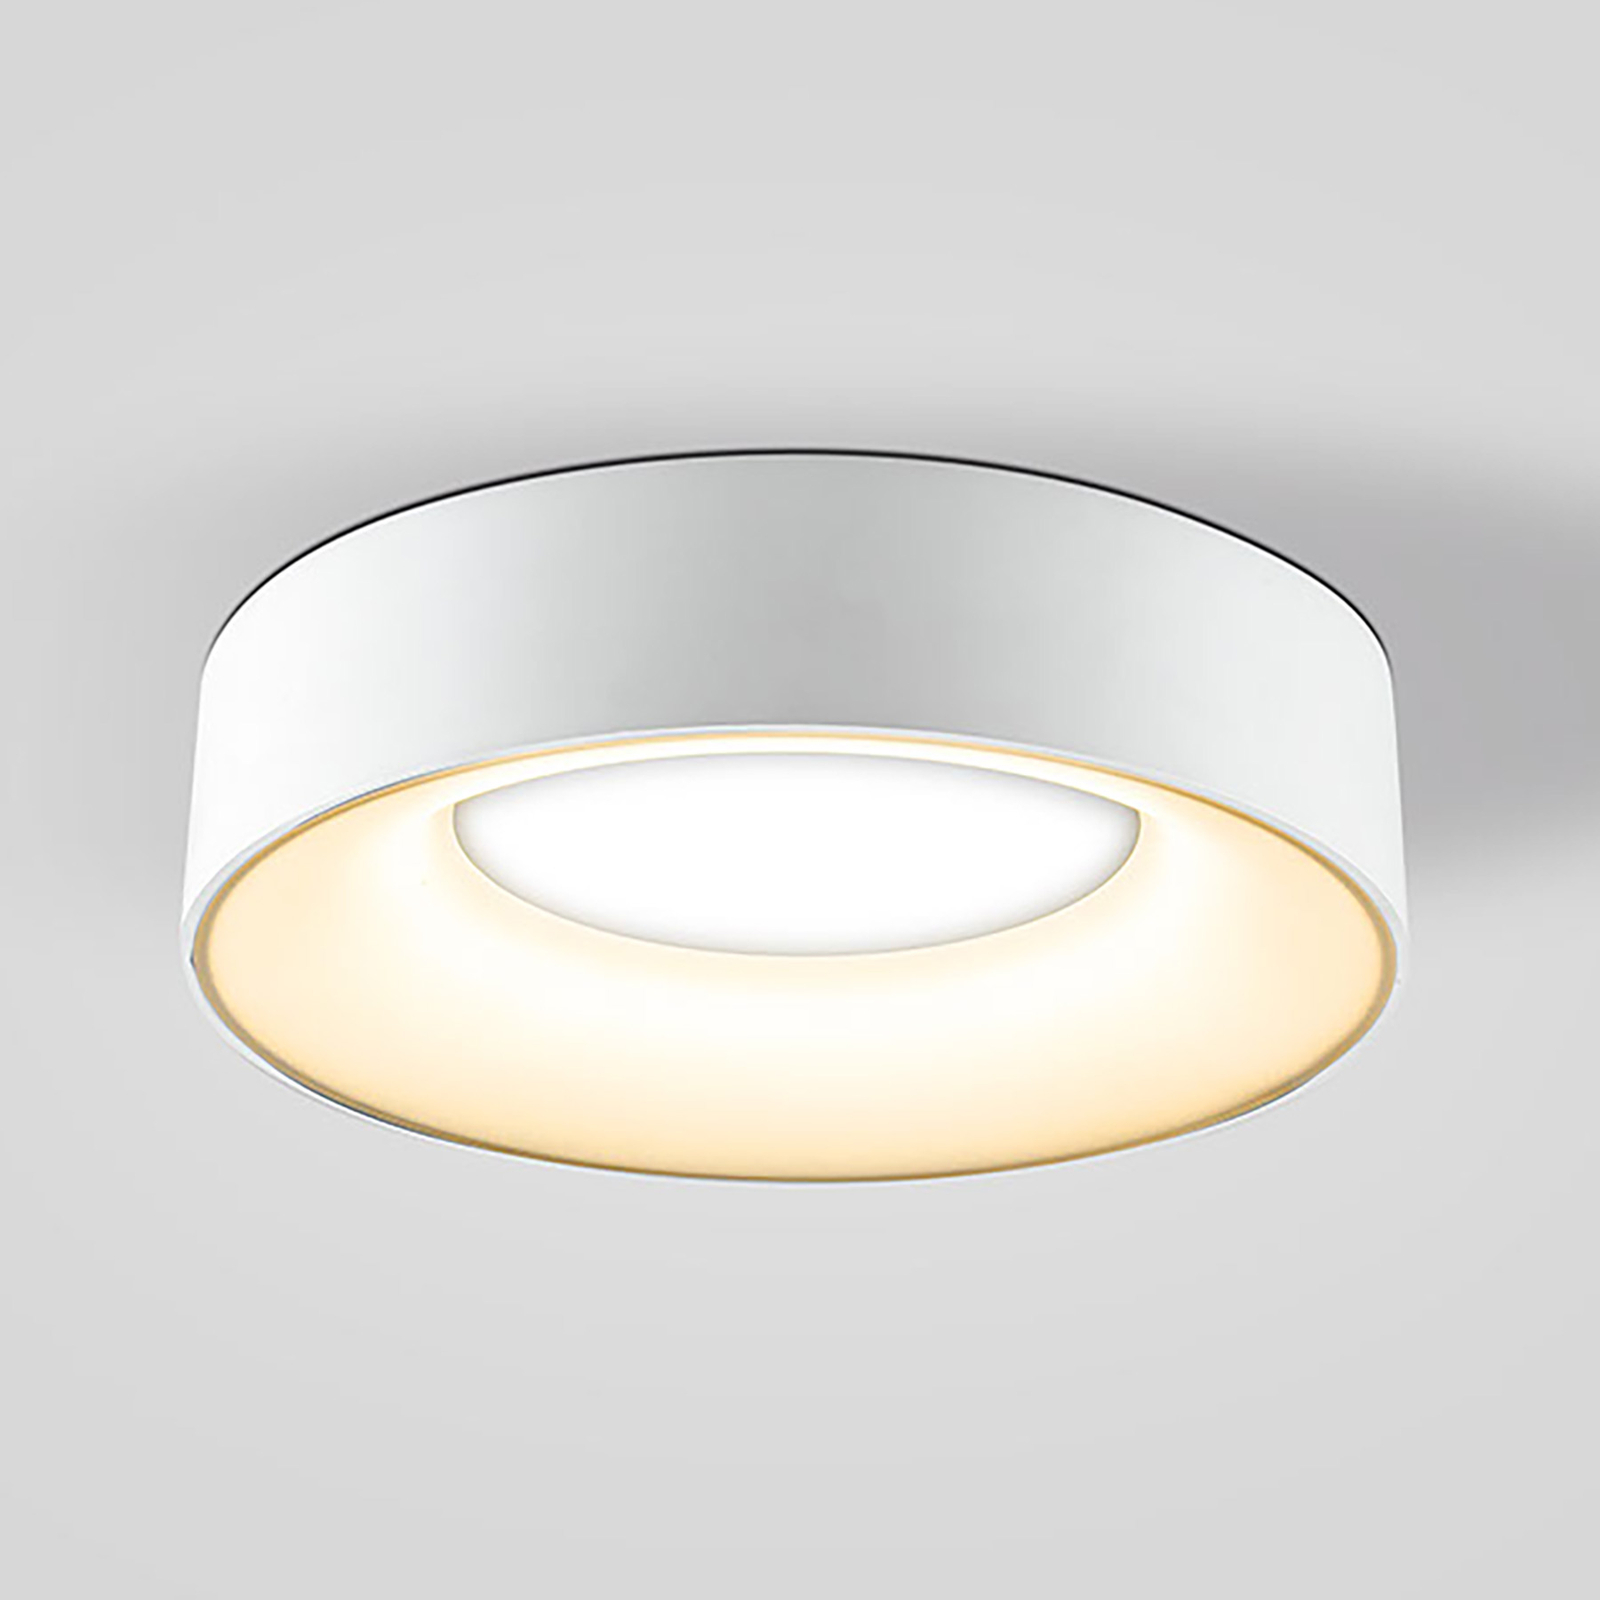 LED-taklampa Sauro, Ø 30 cm, vit